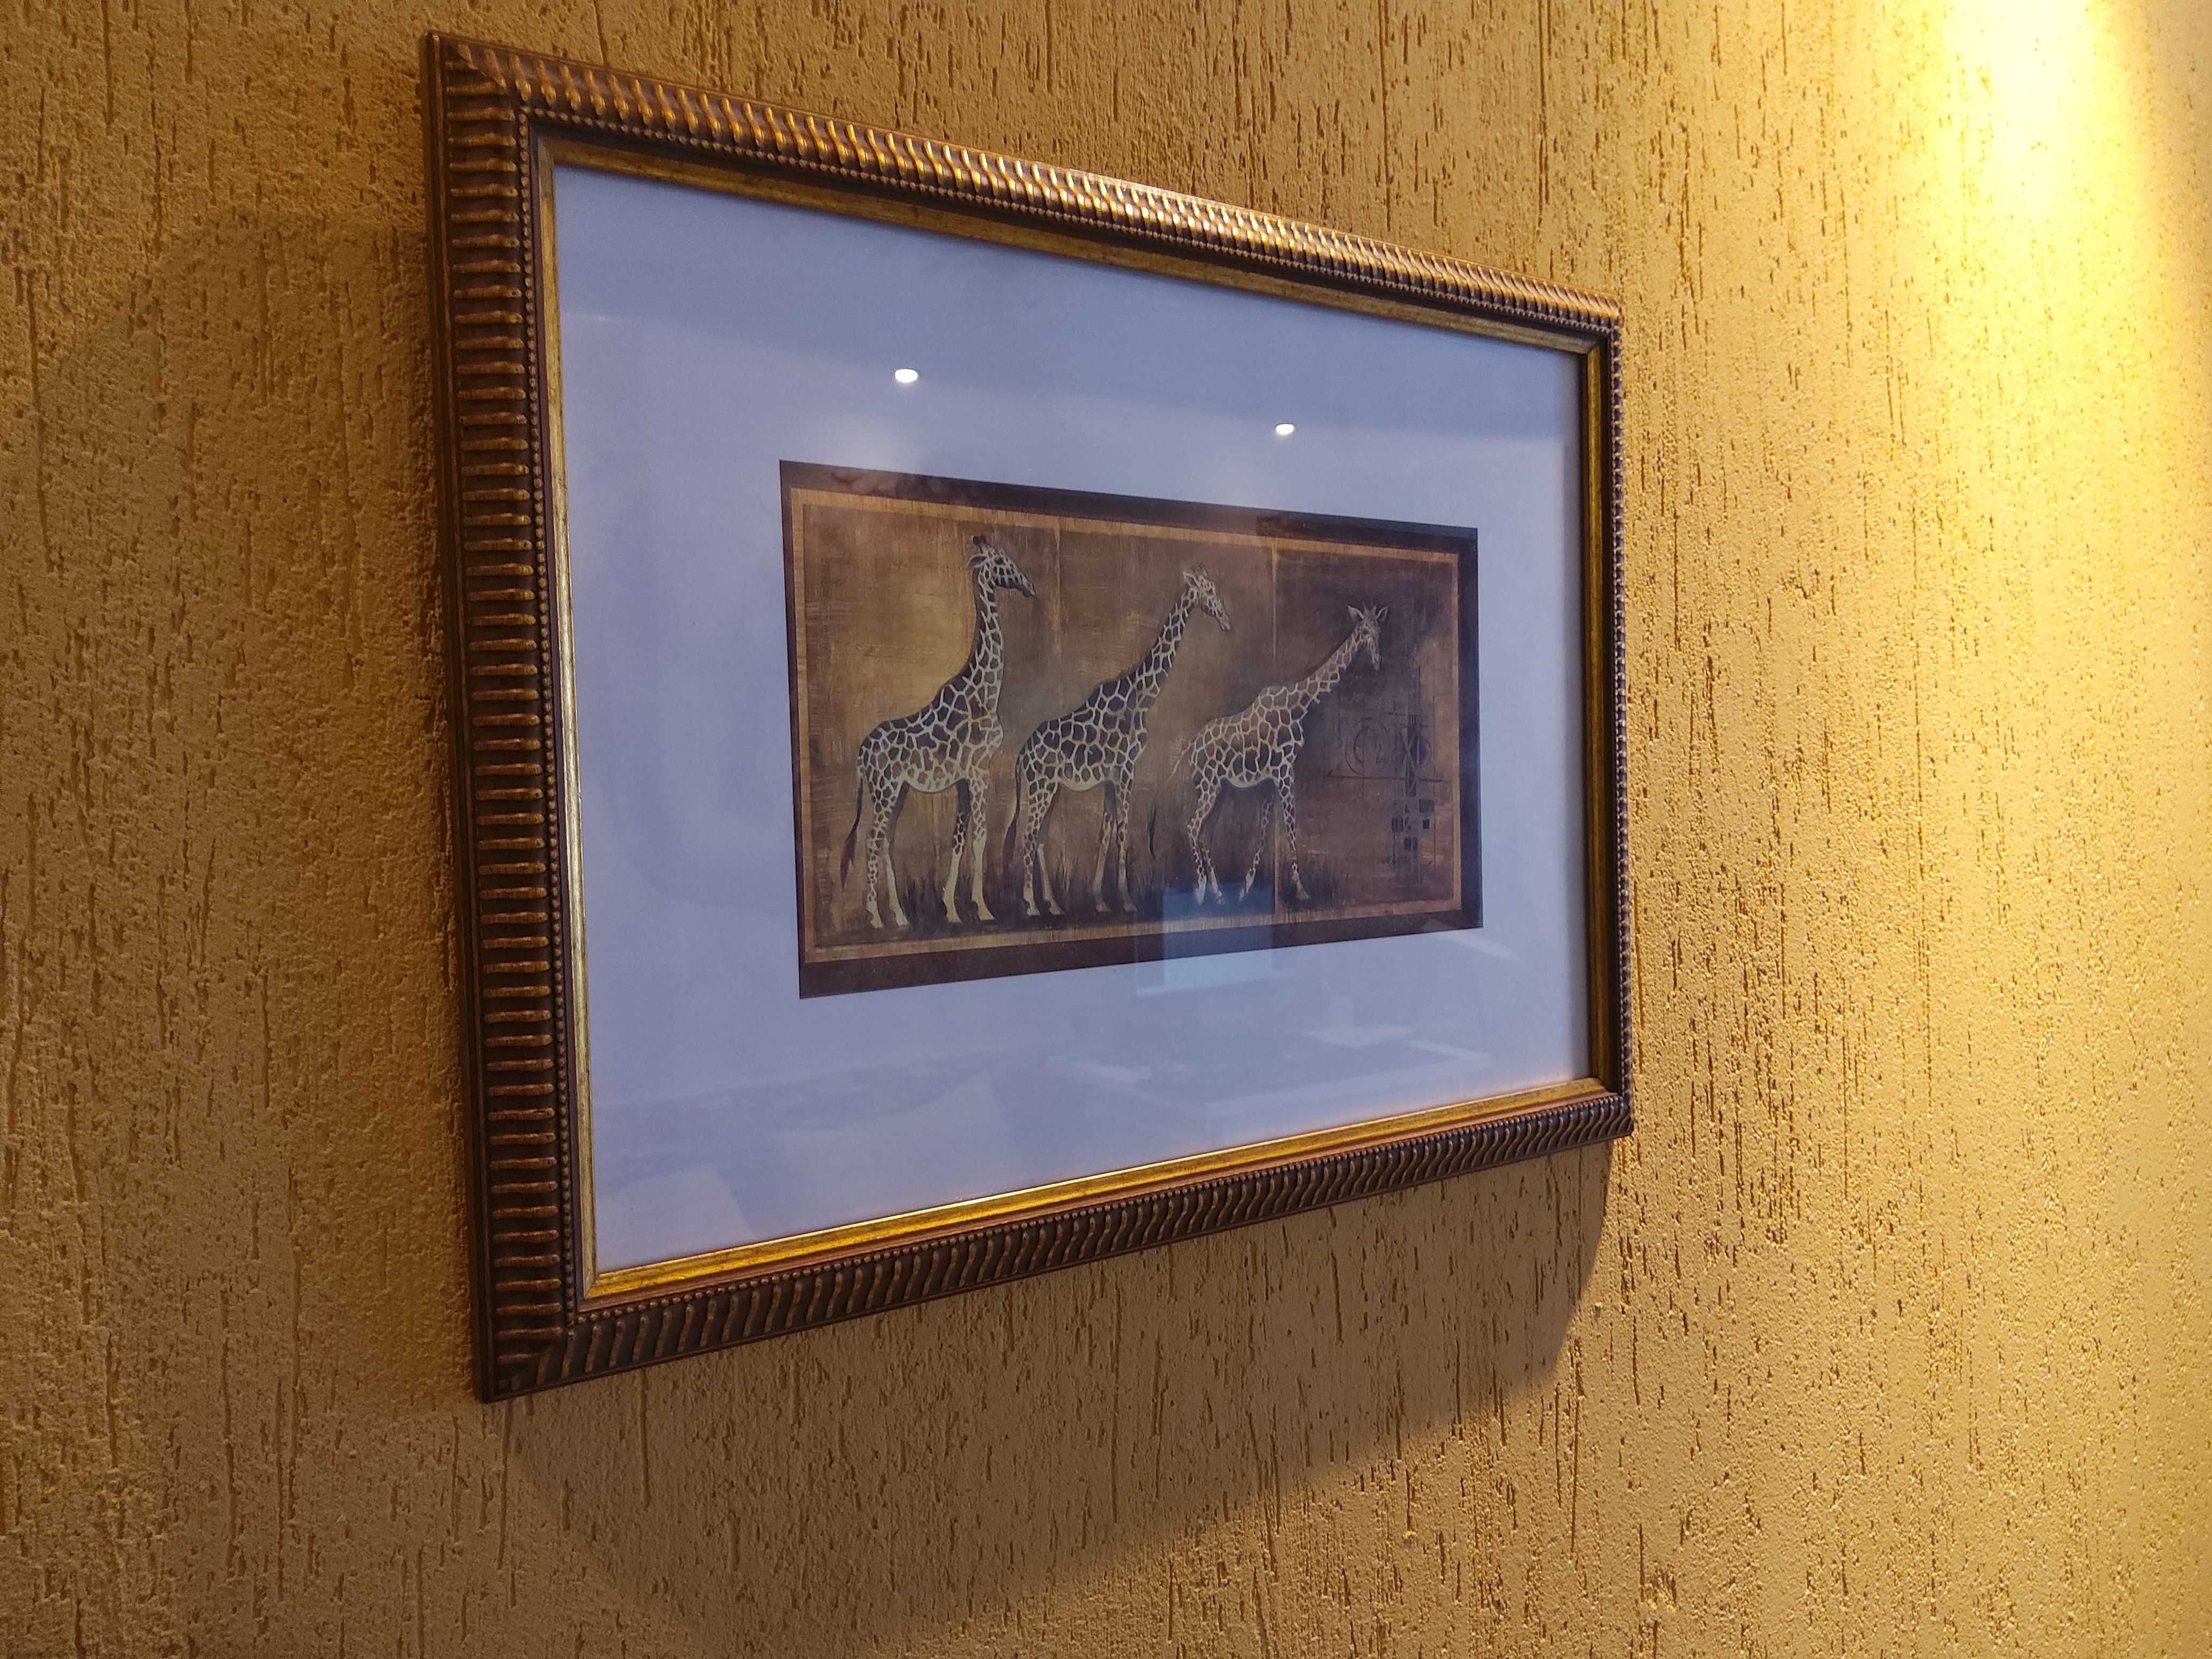 Жирафы репродукция картина в рамке под стеклом африканский стиль